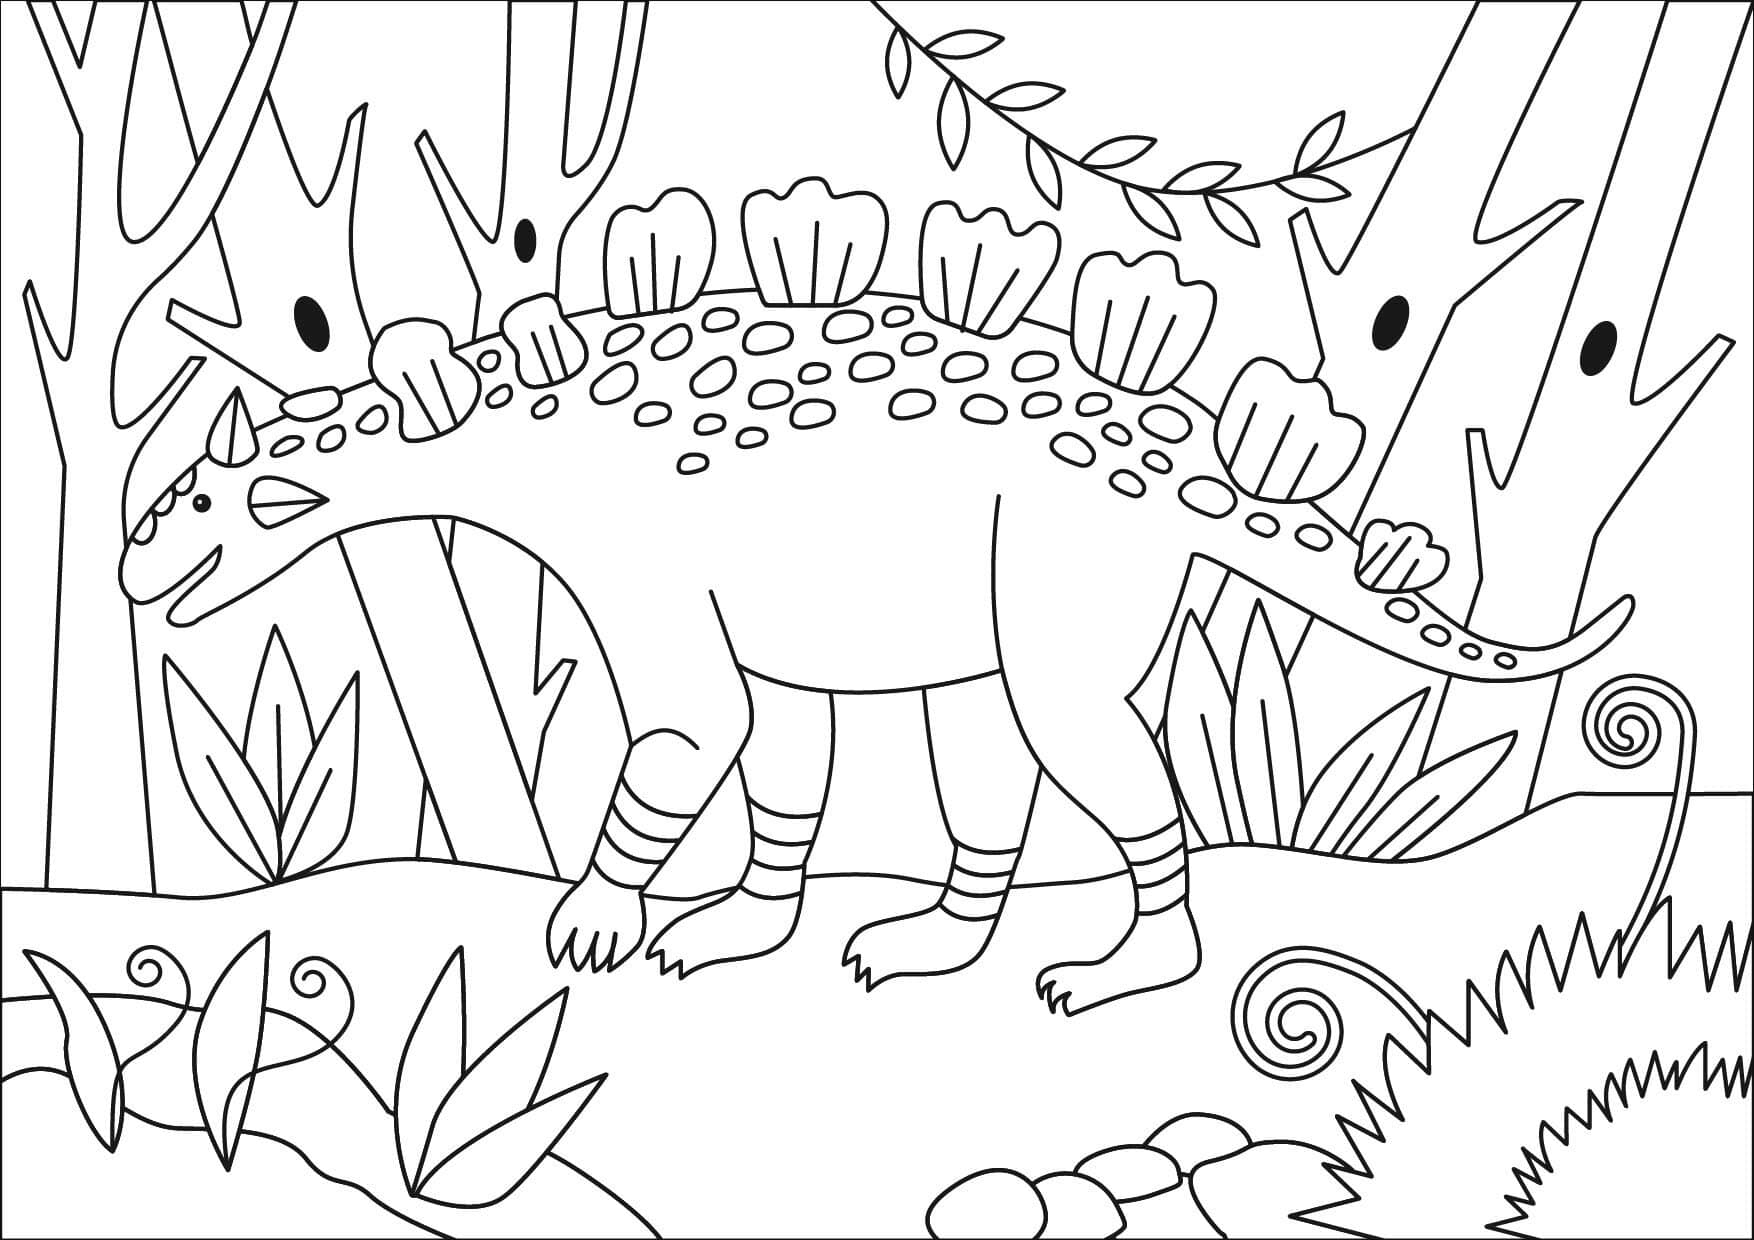 Crichtonsaurus is one of Ankylosaurus Dinosaurus types Coloring Pages